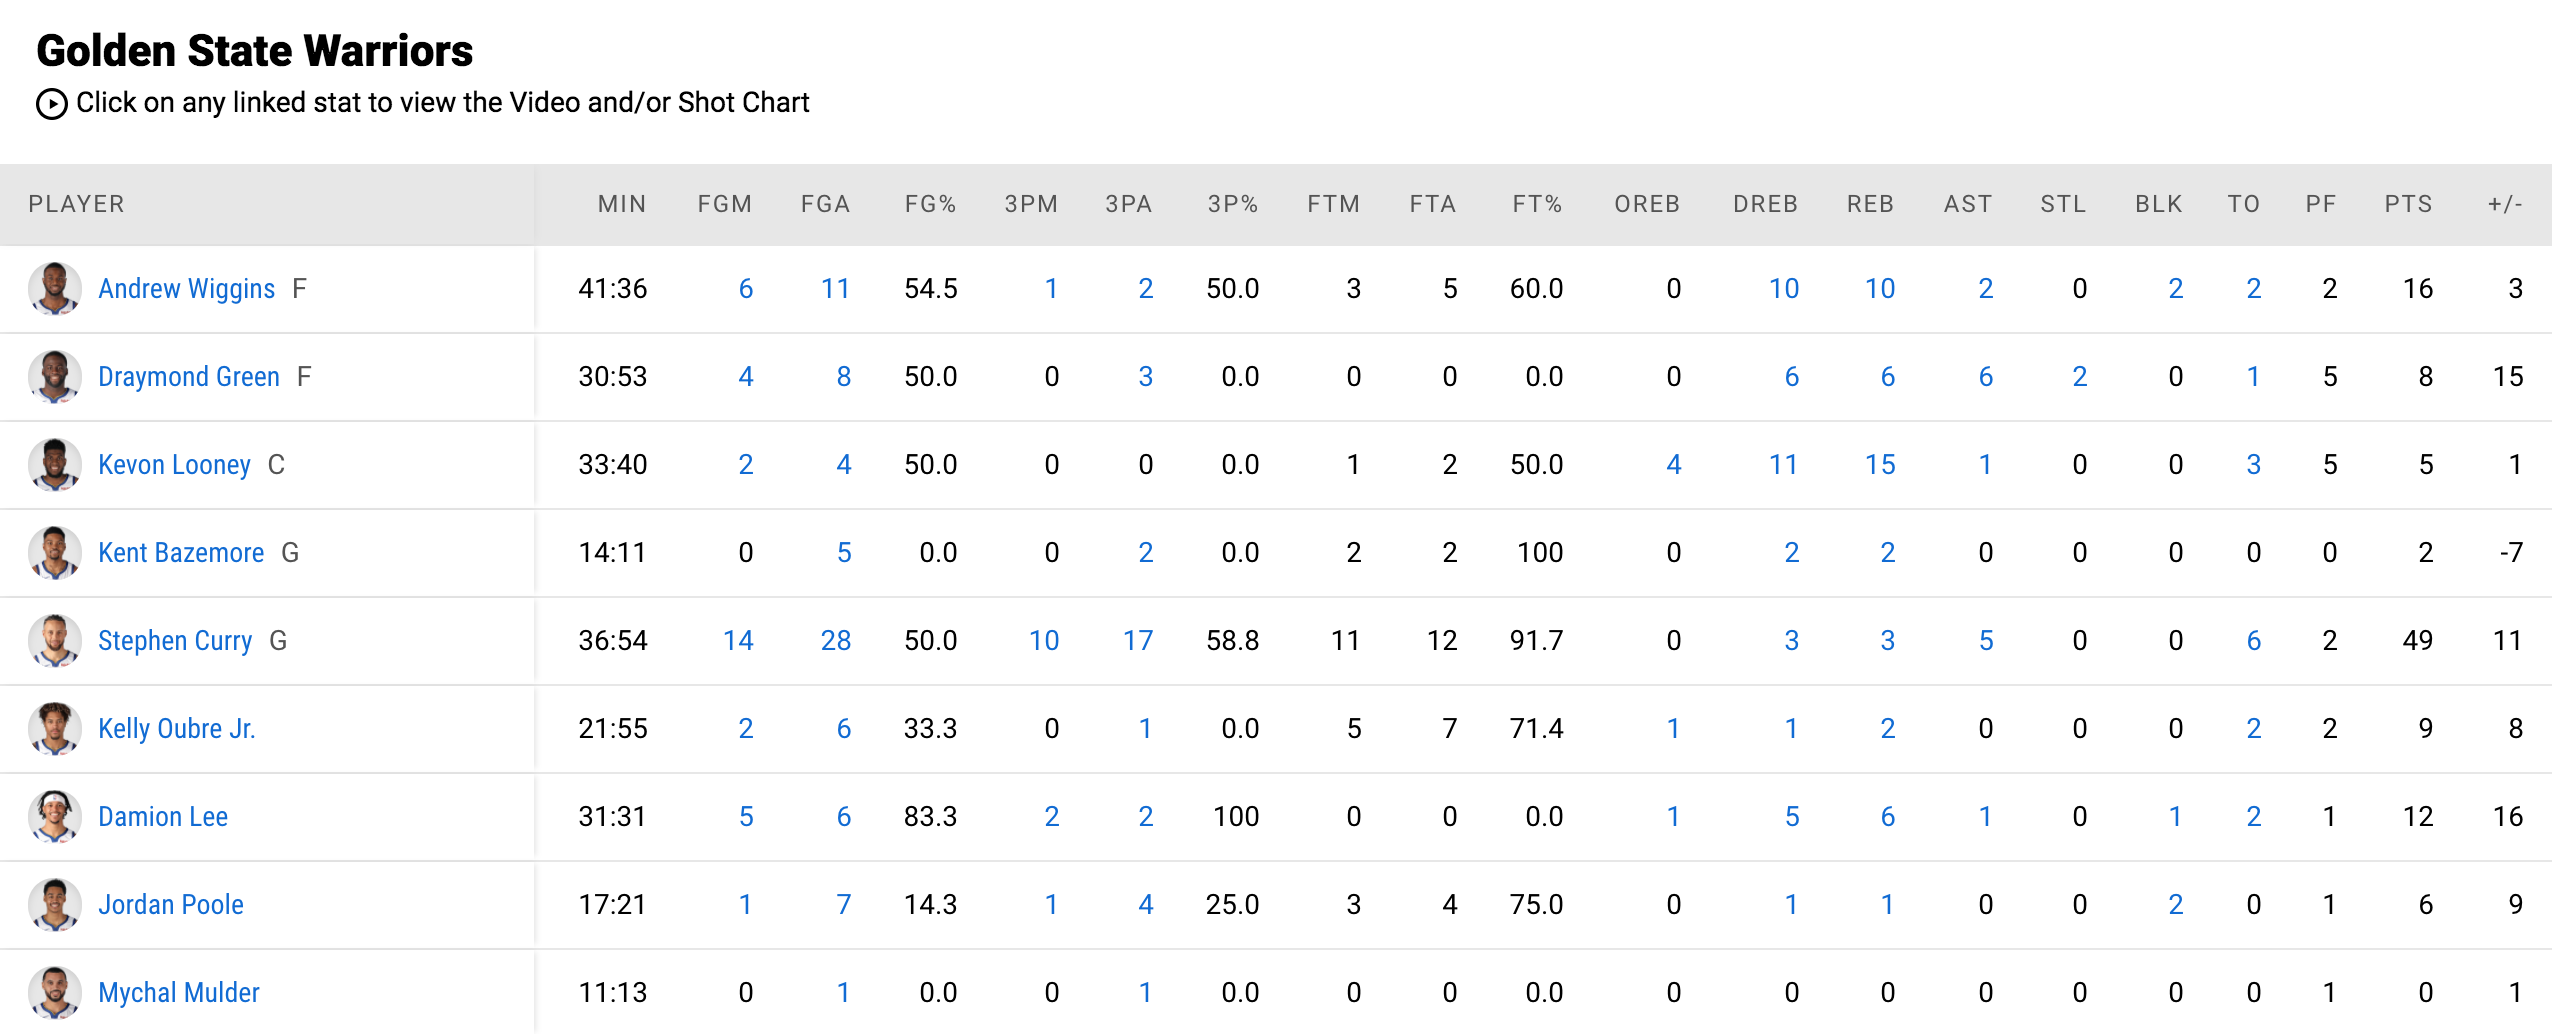 Vượt qua huyền thoại Kobe Bryant, Stephen Curry tạo nên điều kỳ diệu trước Philadelphia 76ers - Ảnh 4.